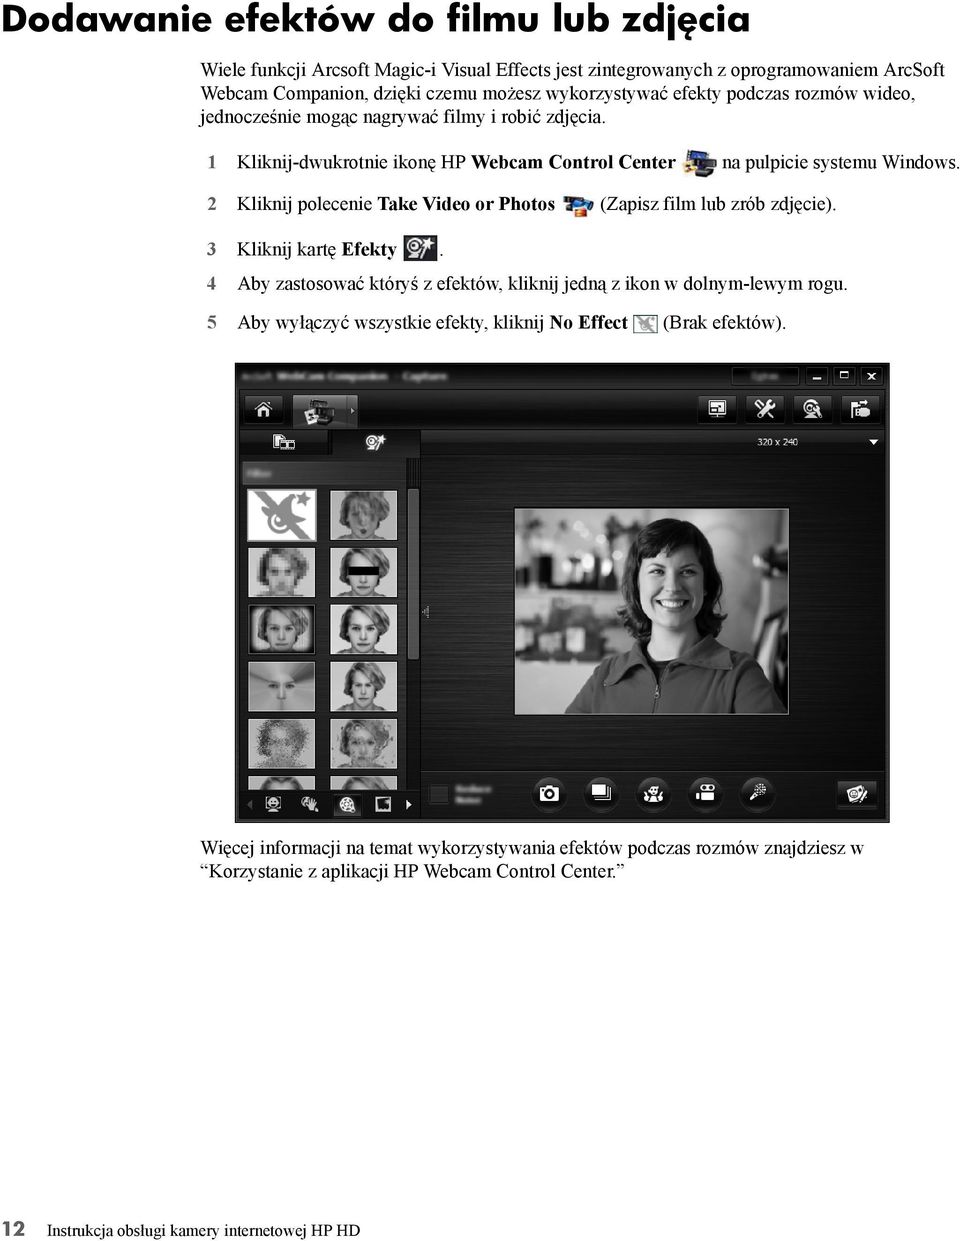 2 Kliknij polecenie Take Video or Photos (Zapisz film lub zrób zdjęcie). 3 Kliknij kartę Efekty. 4 Aby zastosować któryś z efektów, kliknij jedną z ikon w dolnym-lewym rogu.